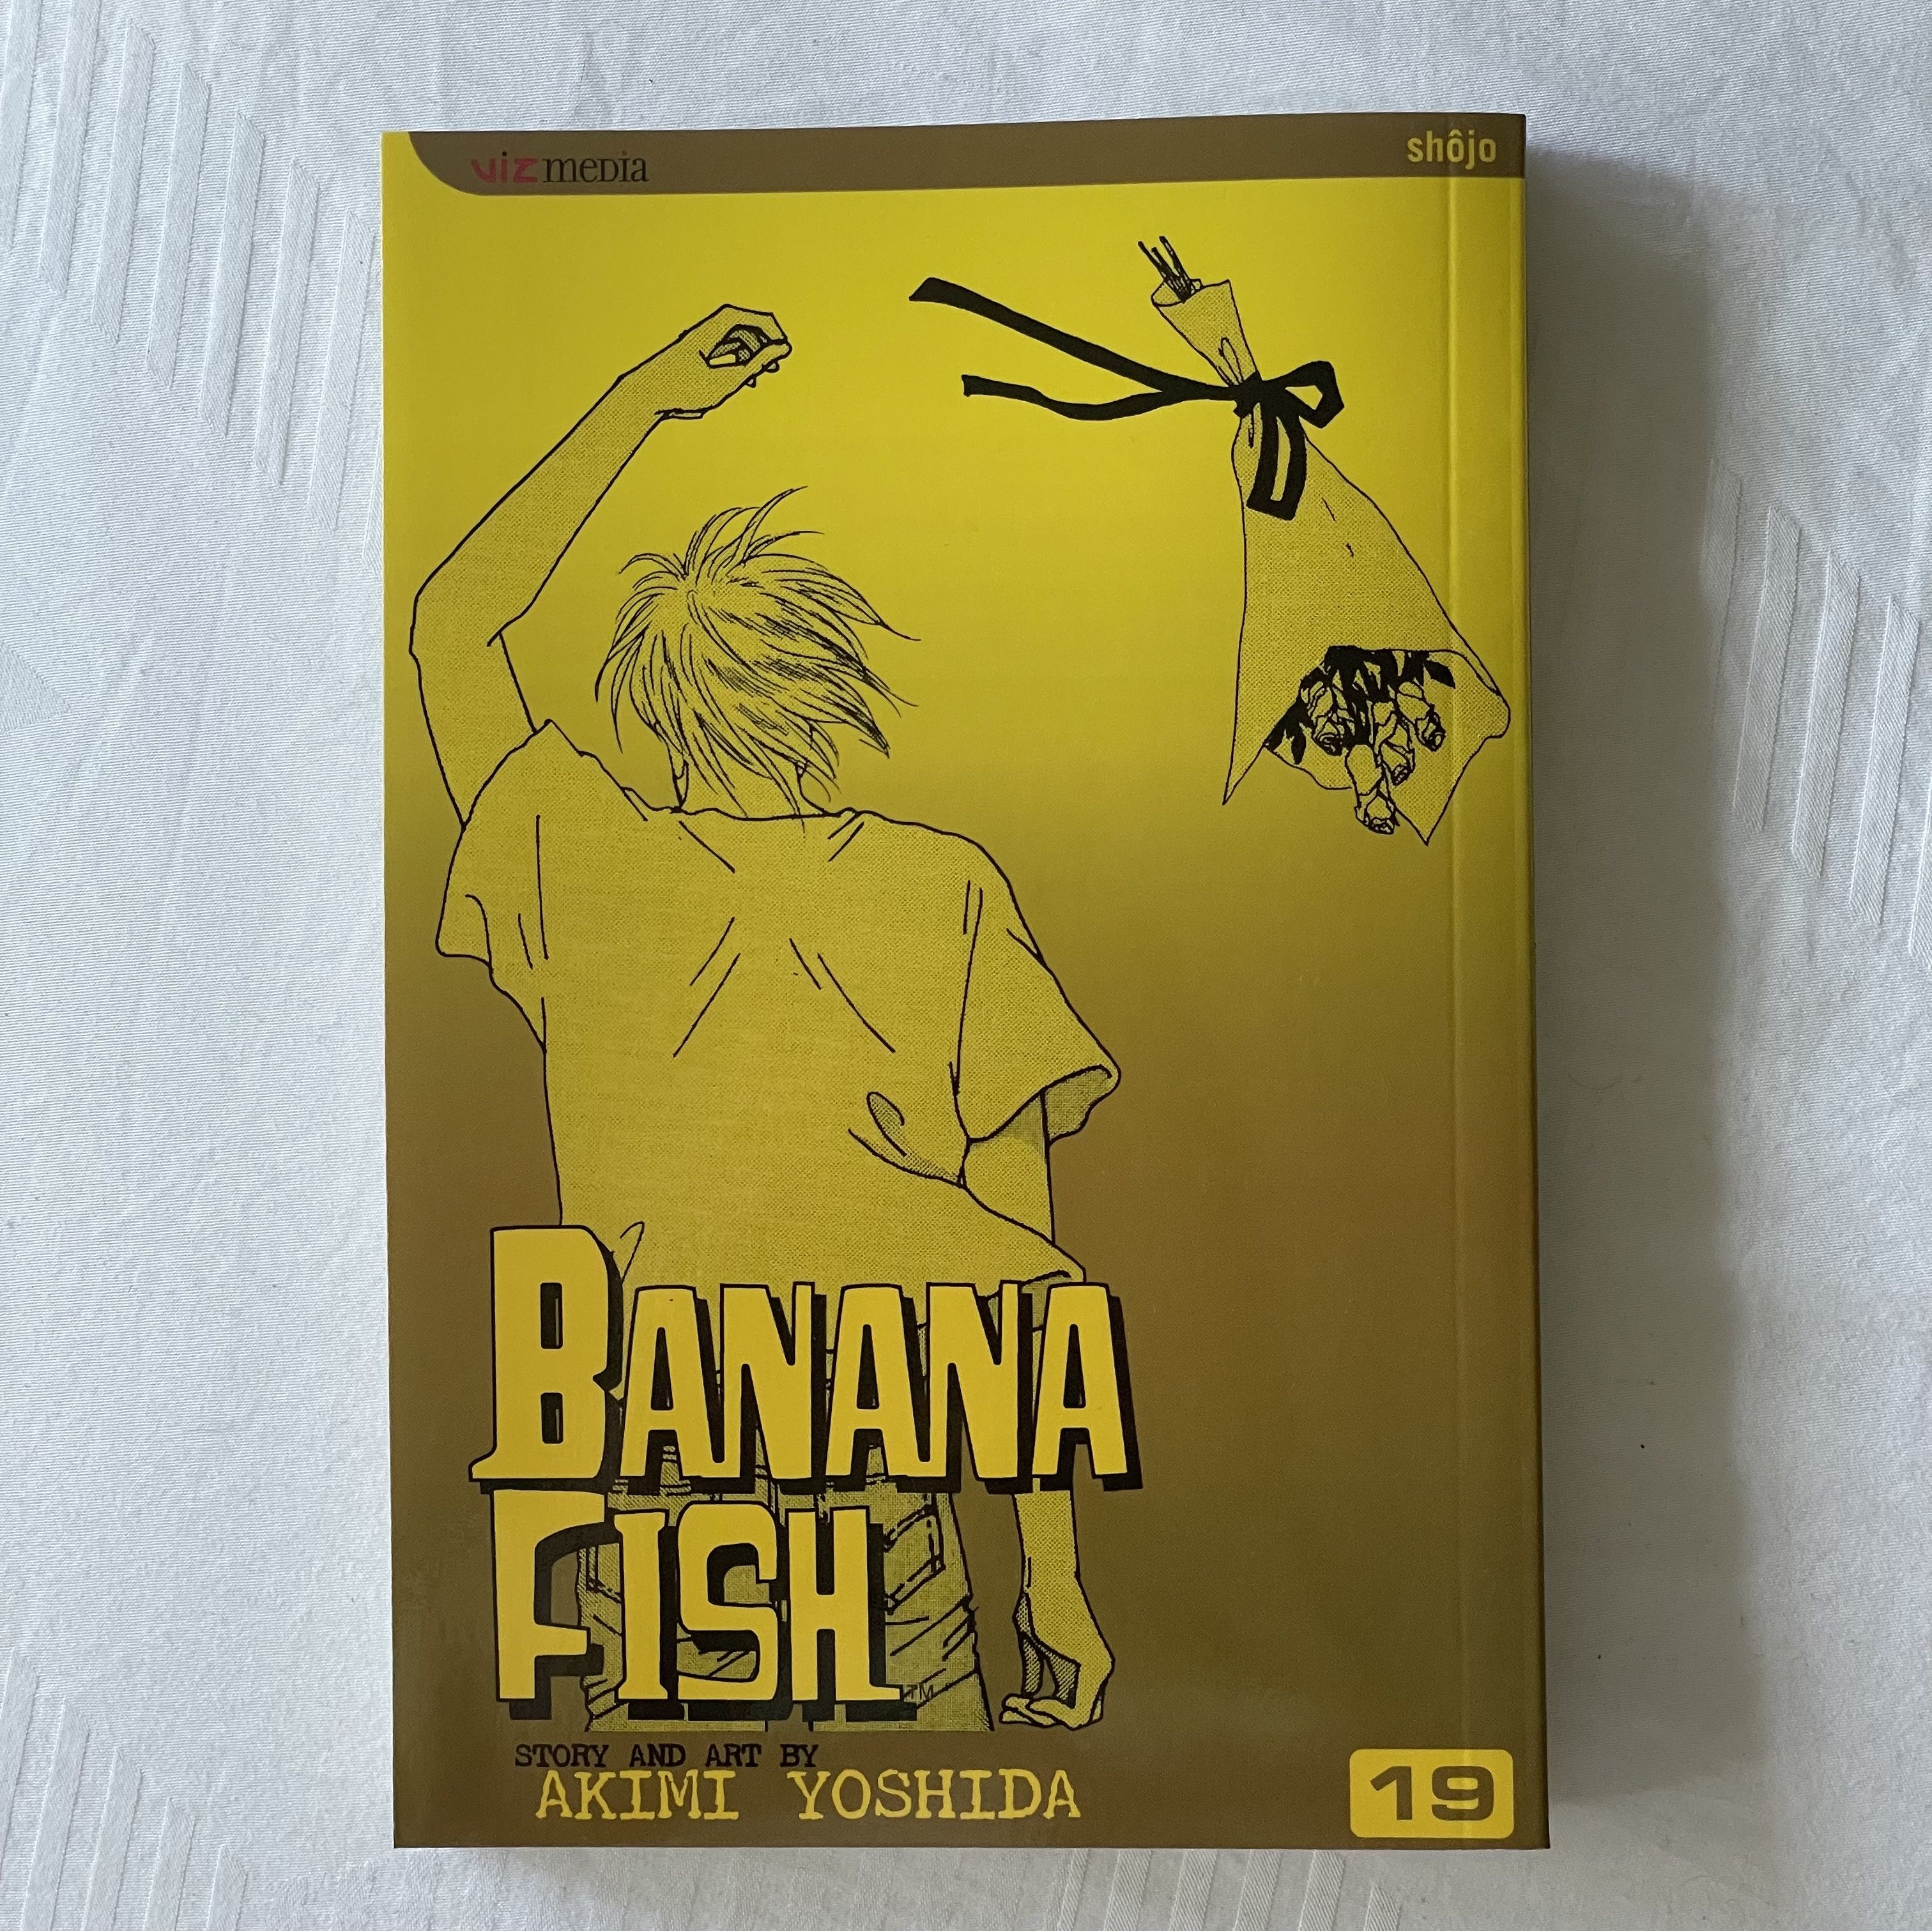 Banana Fish Manga Vol 19 Books Stationery Comics Manga On Carousell